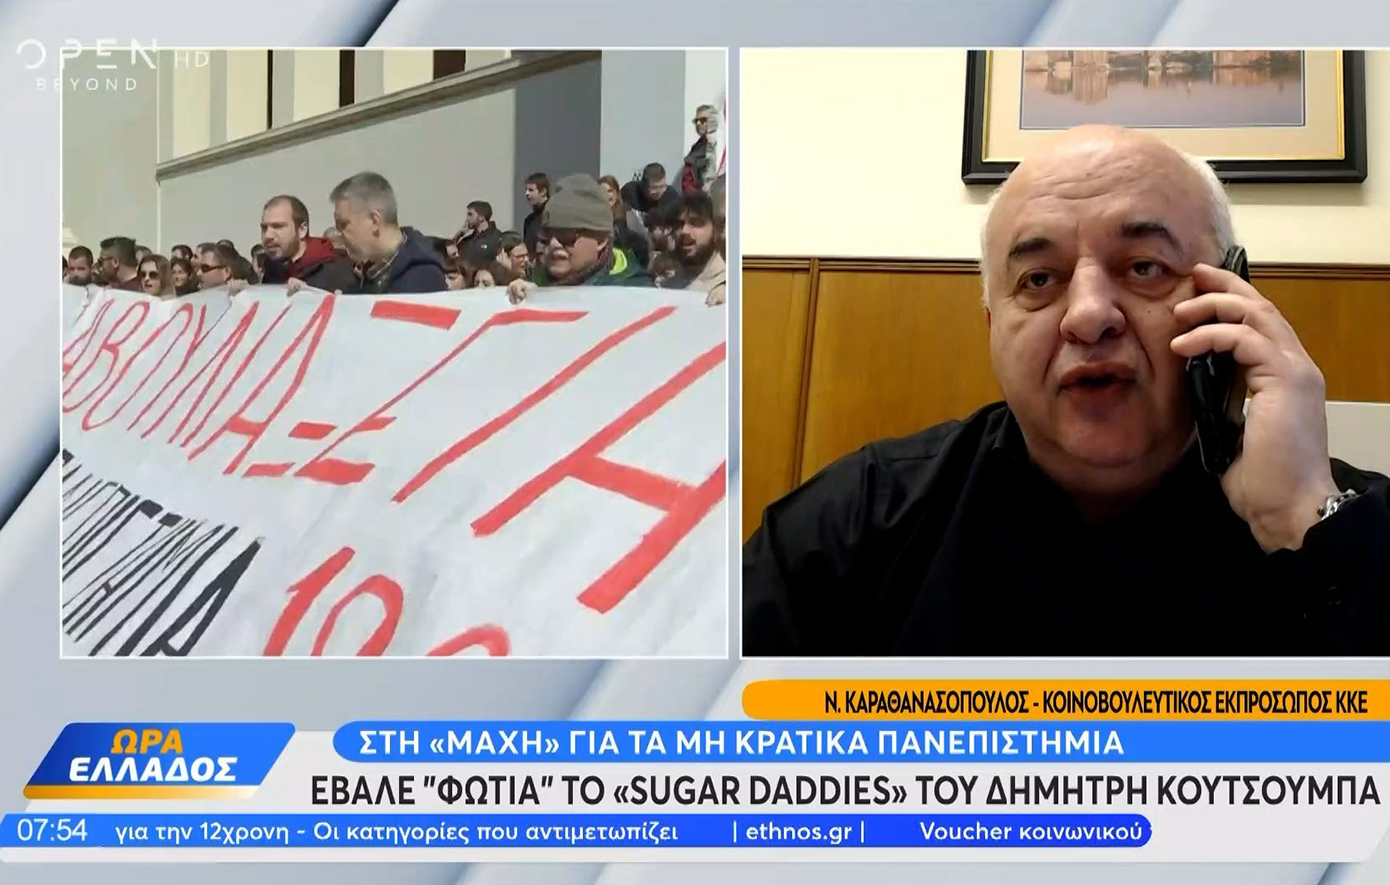 Καραθανασόπουλος για «sugar daddies»: Τα κόμματα που καταγγέλλουν τον Κουτσούμπα αυτογελοιοποιούνται